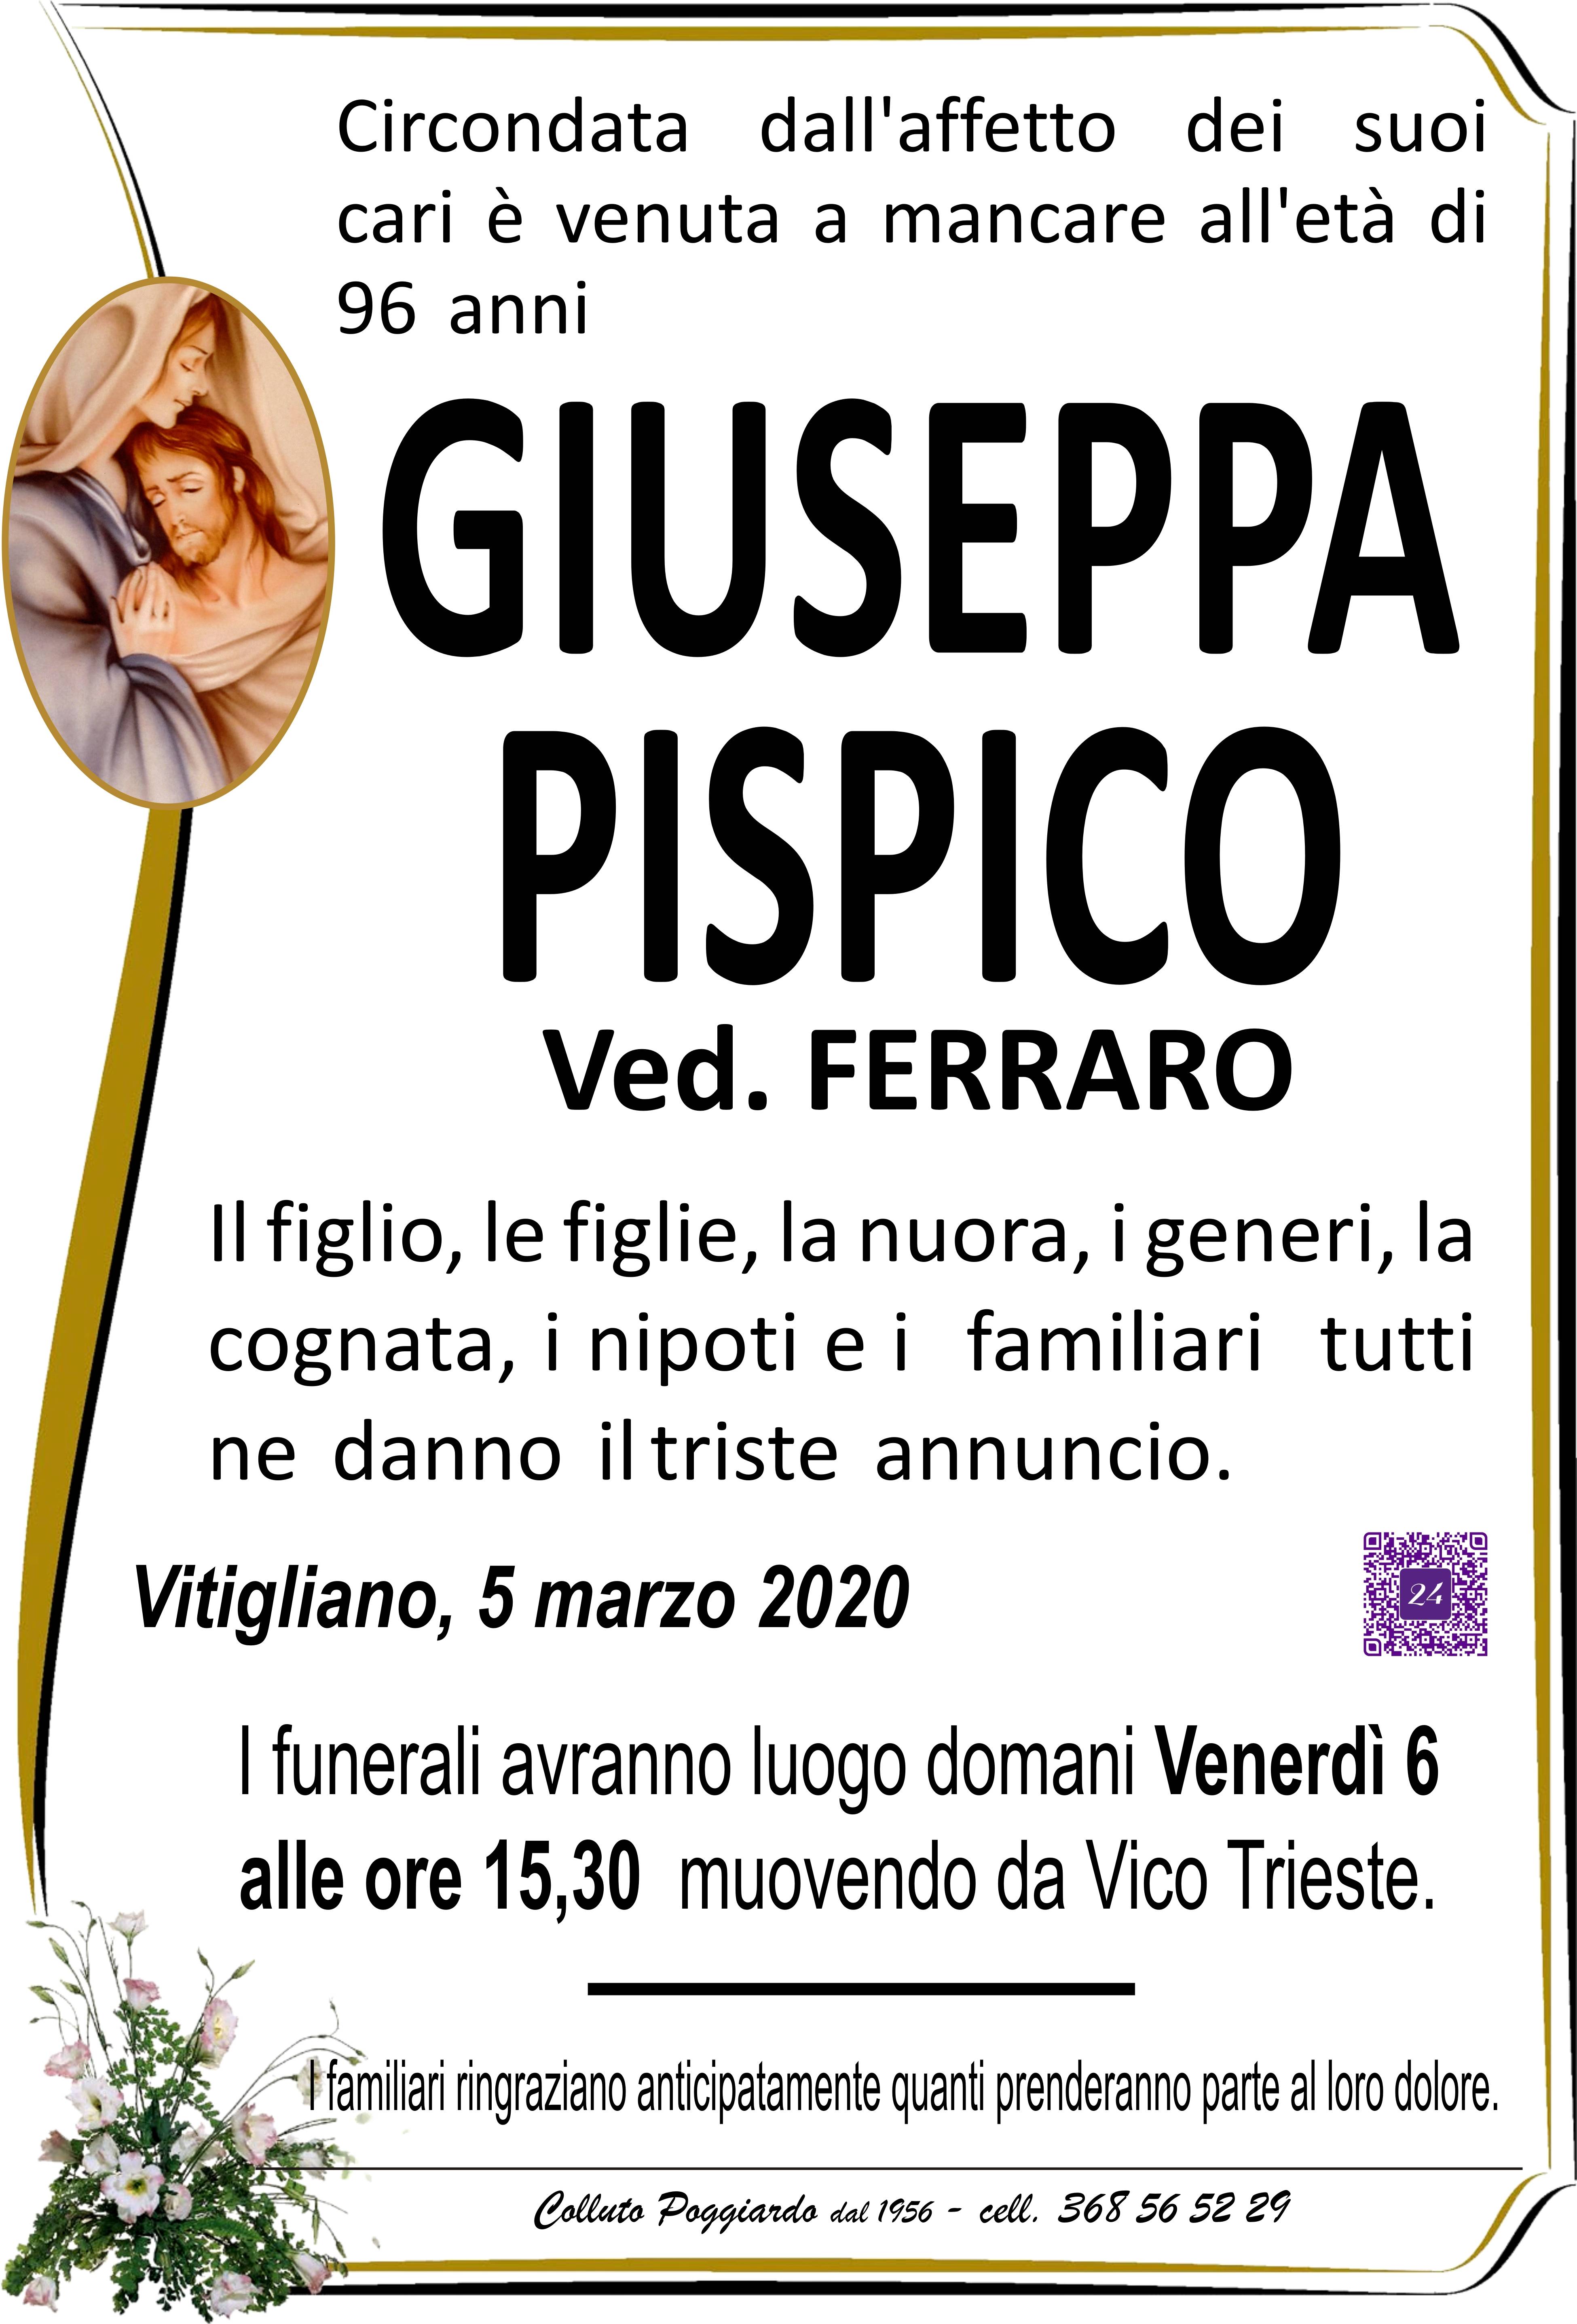 Giuseppa Pispico